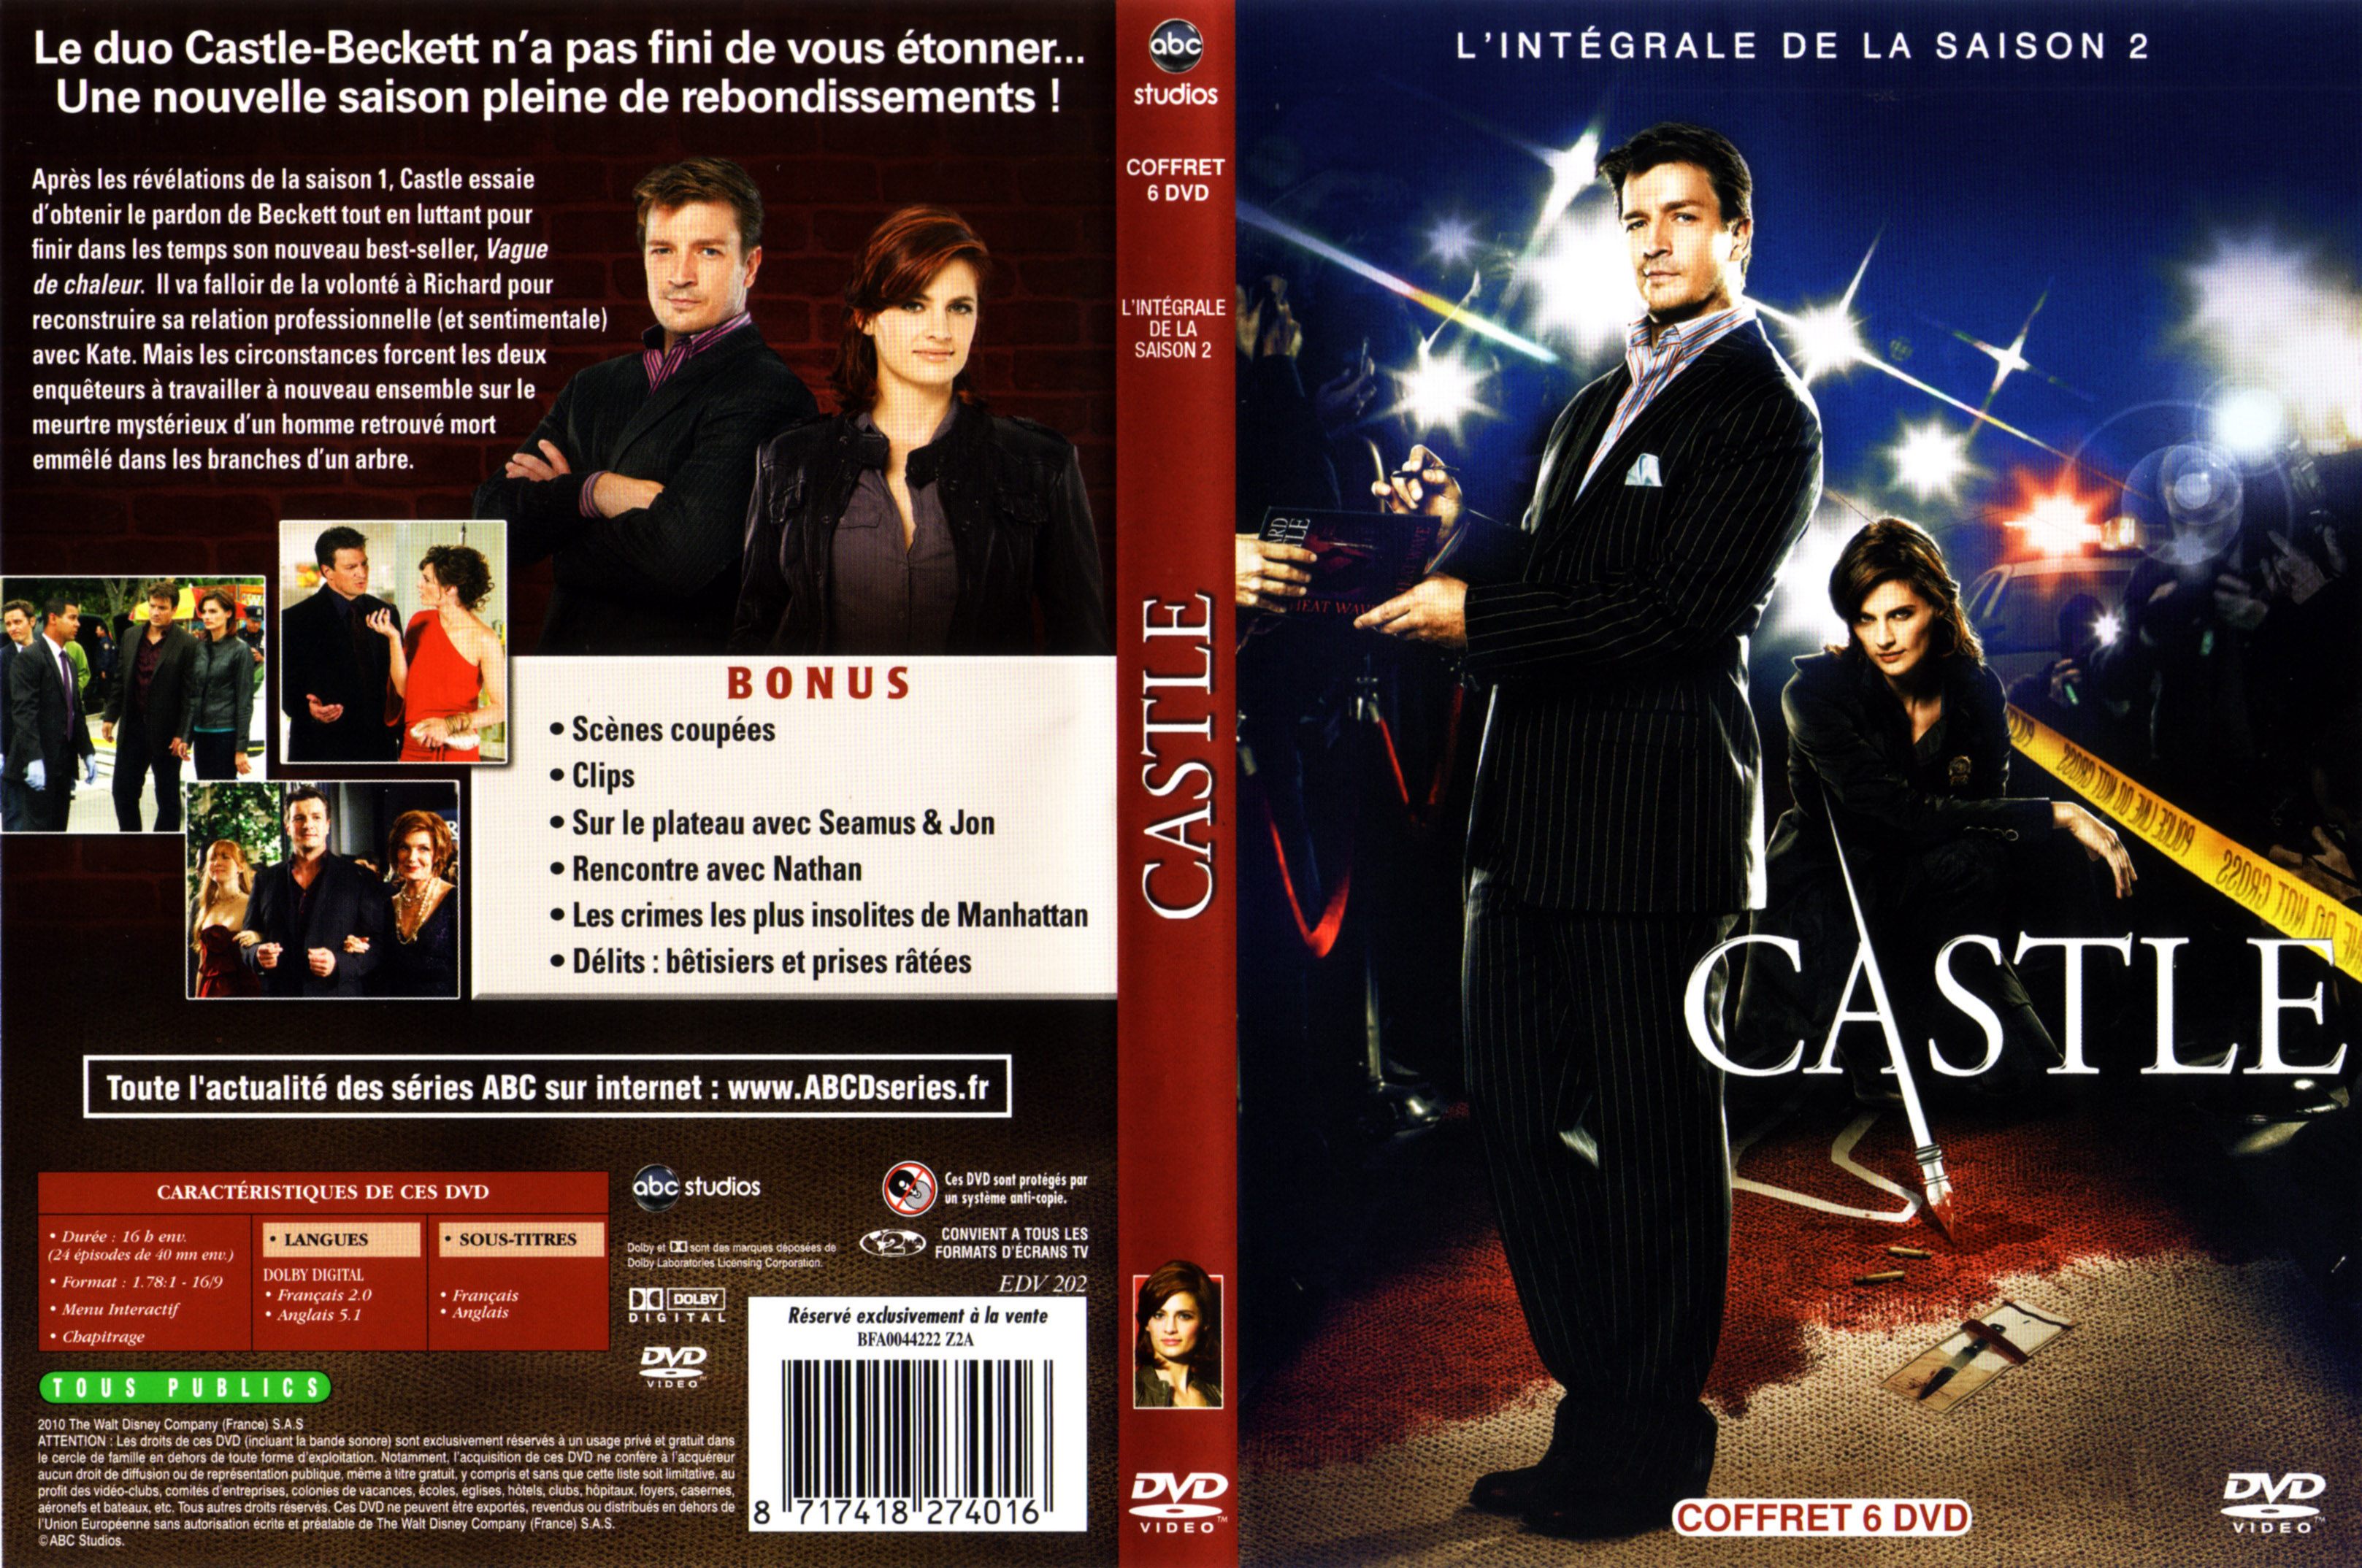 Jaquette DVD Castle Saison 2